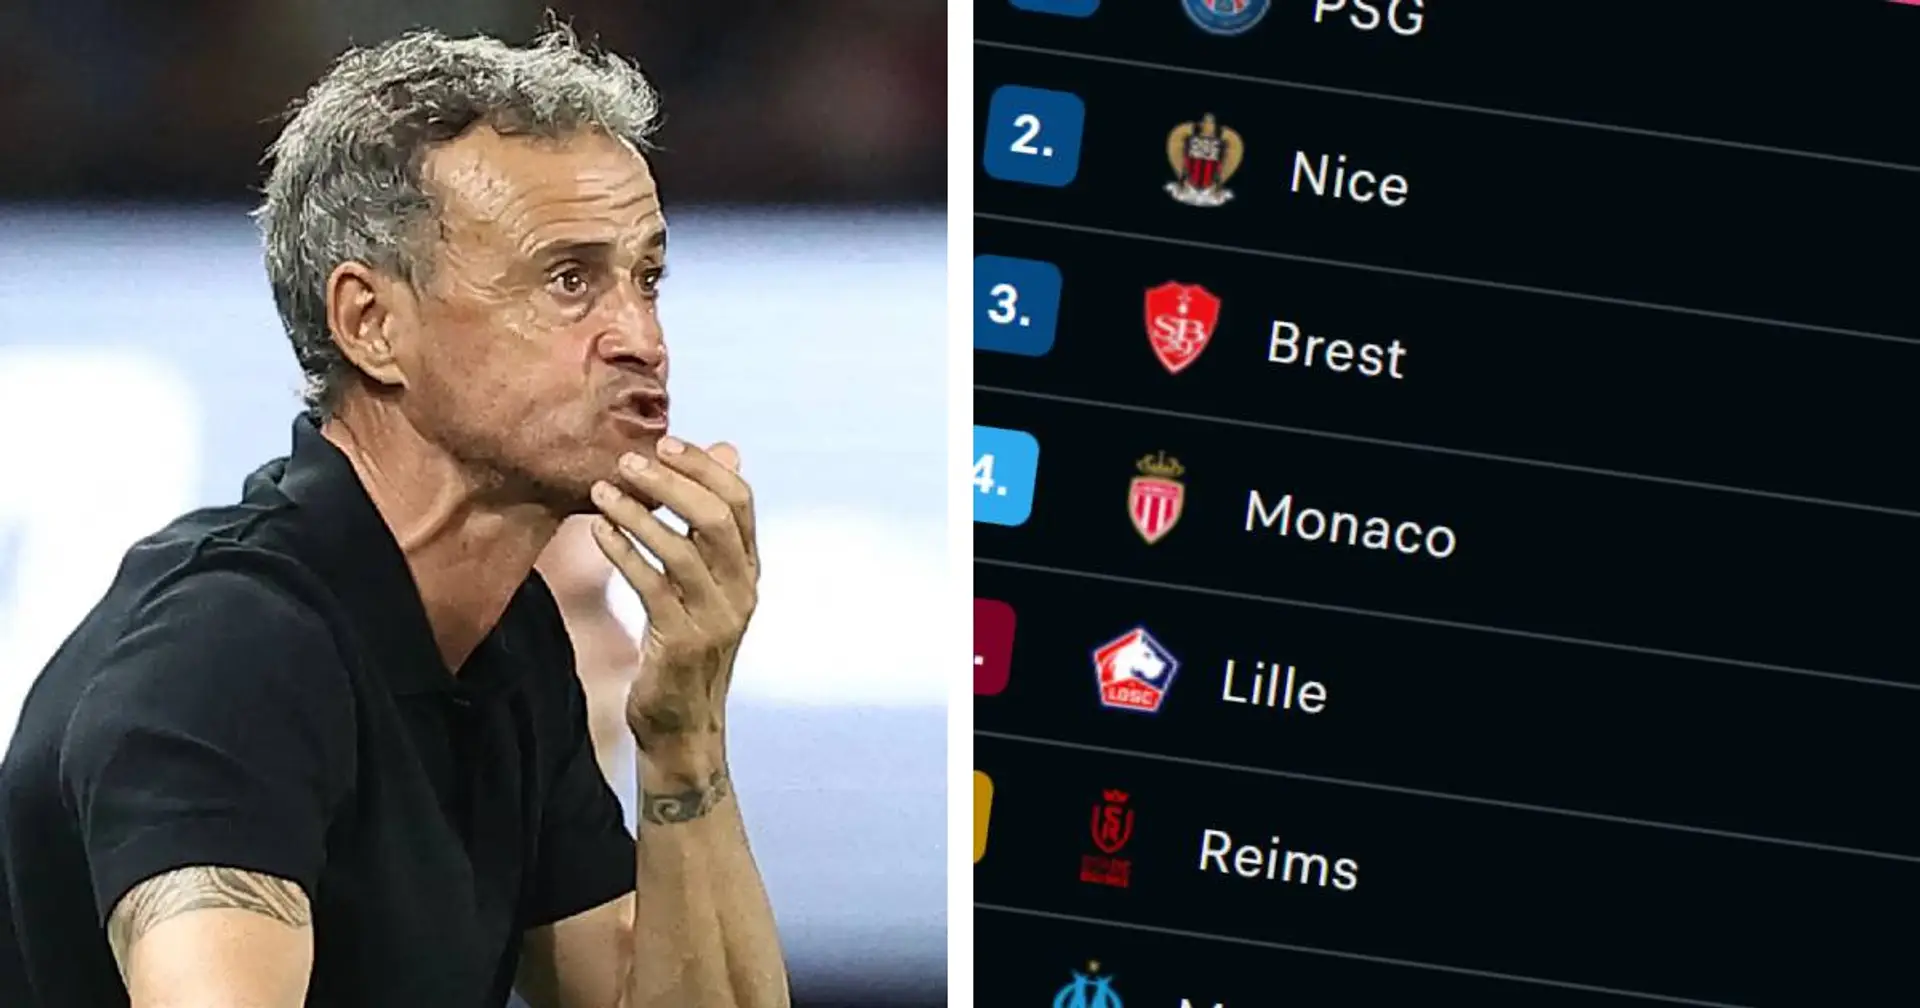 Le PSG toujours solide leader malgré le nul contre Brest - classement de la Ligue 1 à la 19e journée